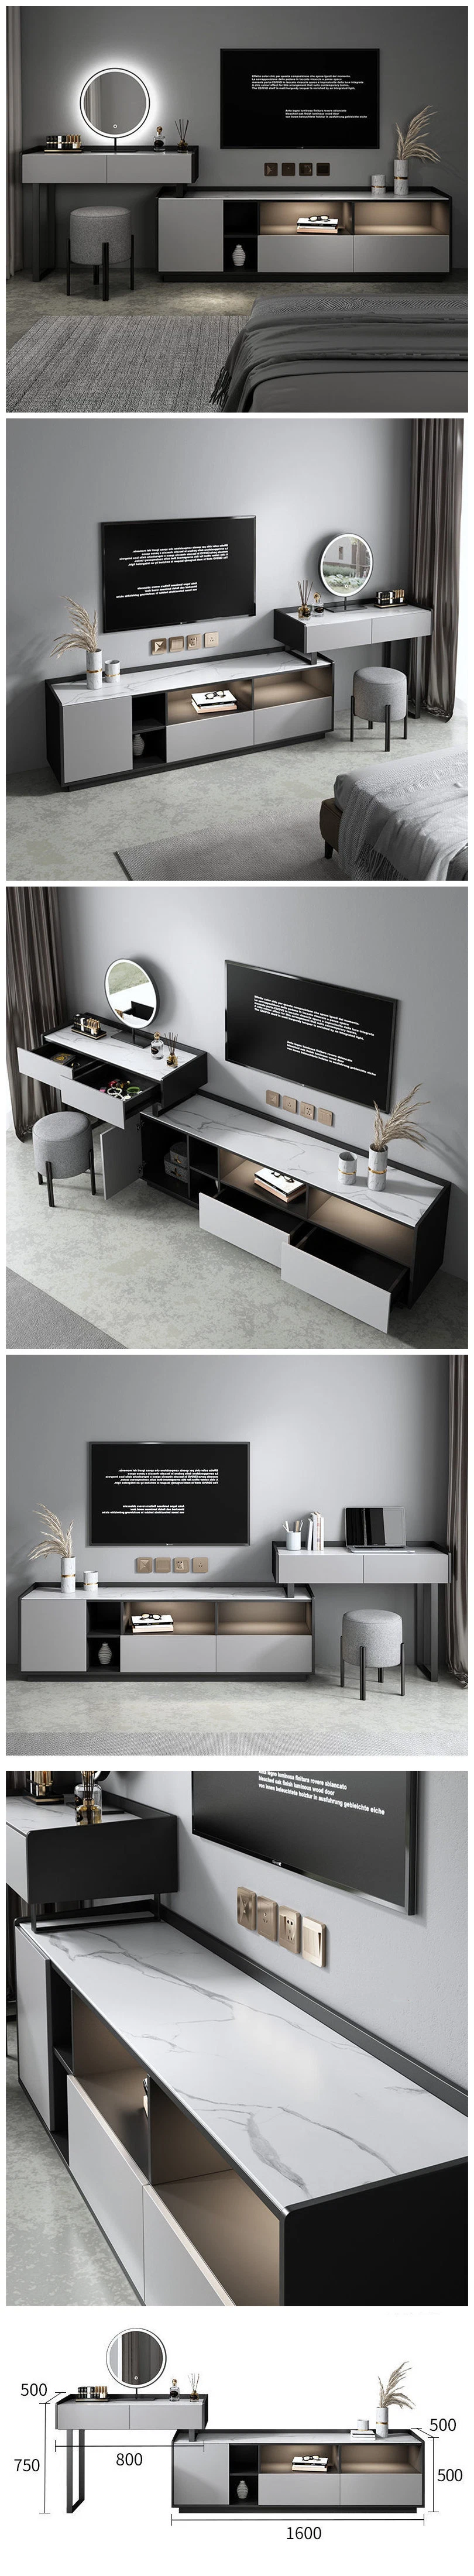 High-End Newest Modern Office Home Hotel Bedroom Furniture Durable Make-up Dresser